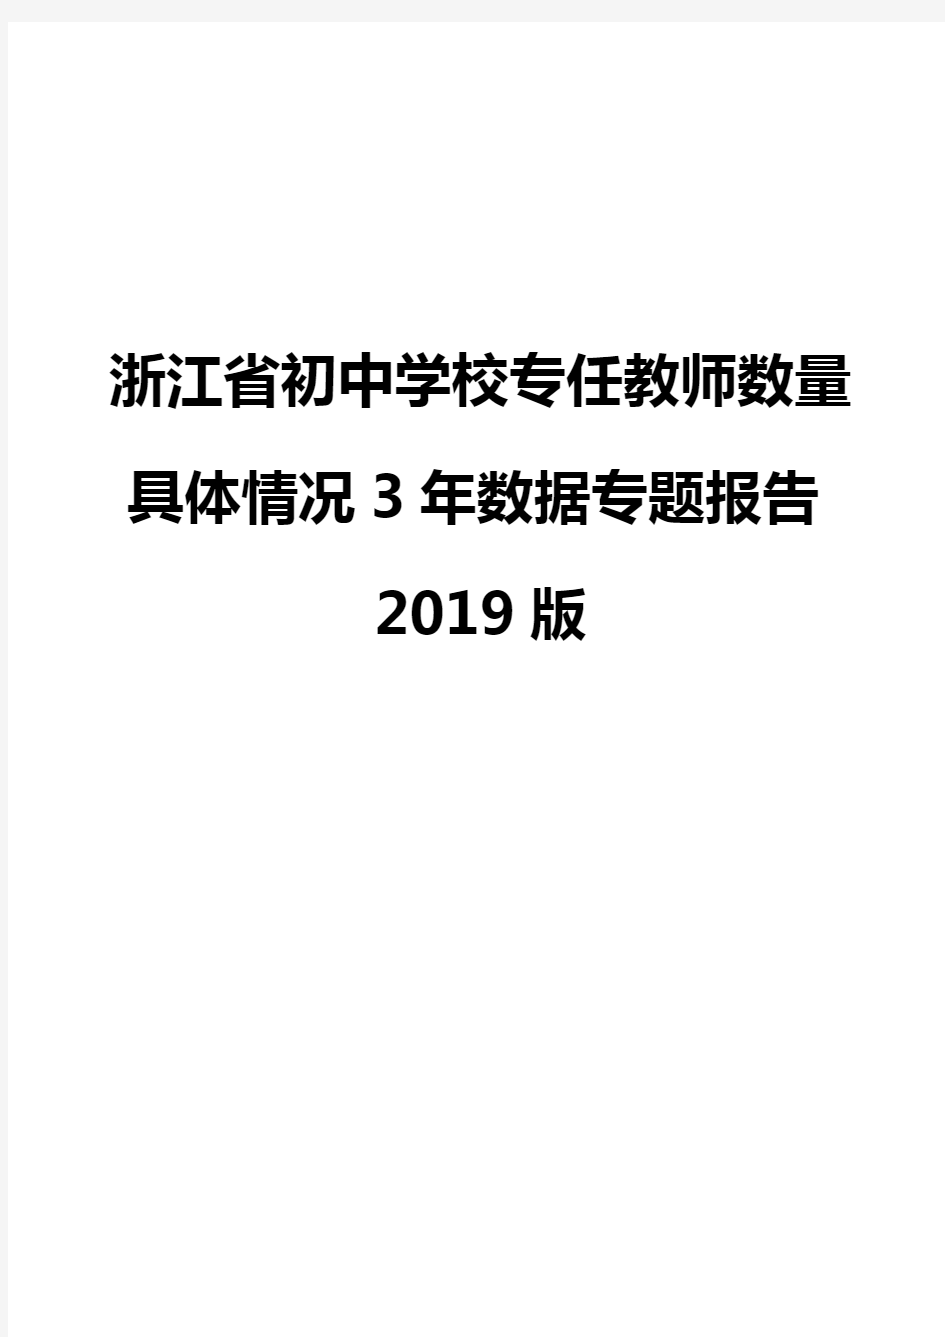 浙江省初中学校专任教师数量具体情况3年数据专题报告2019版